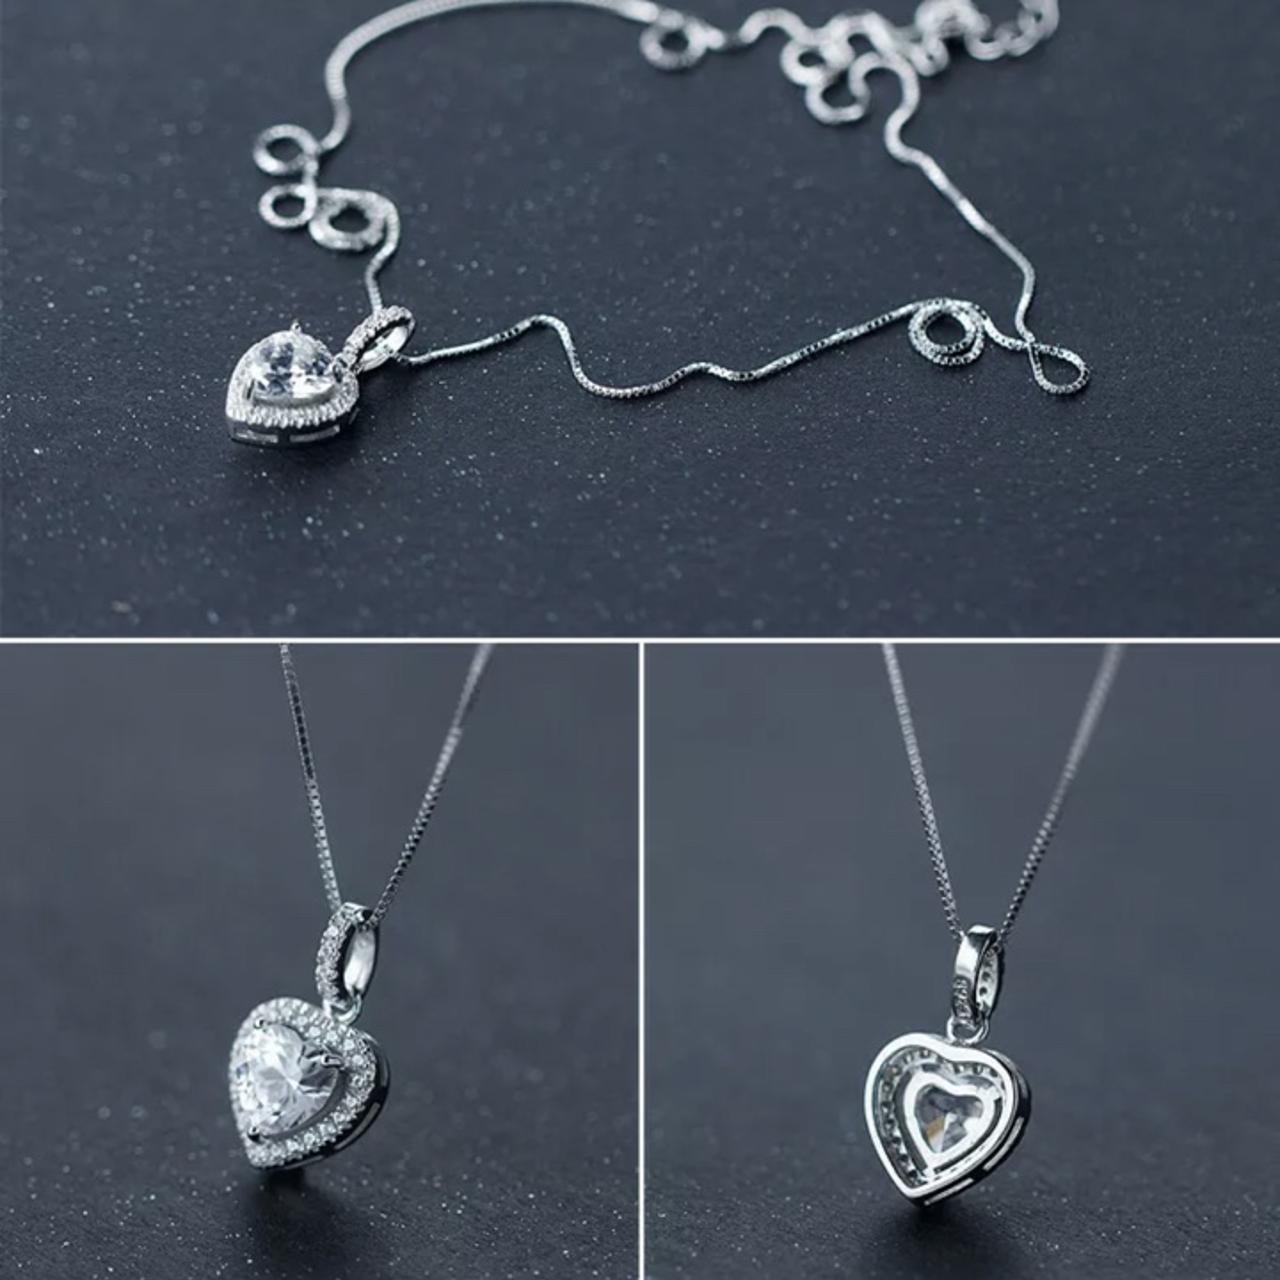 Sterling Silver Lab-Grown Diamond Heart Bracelet, £79 at Warren James